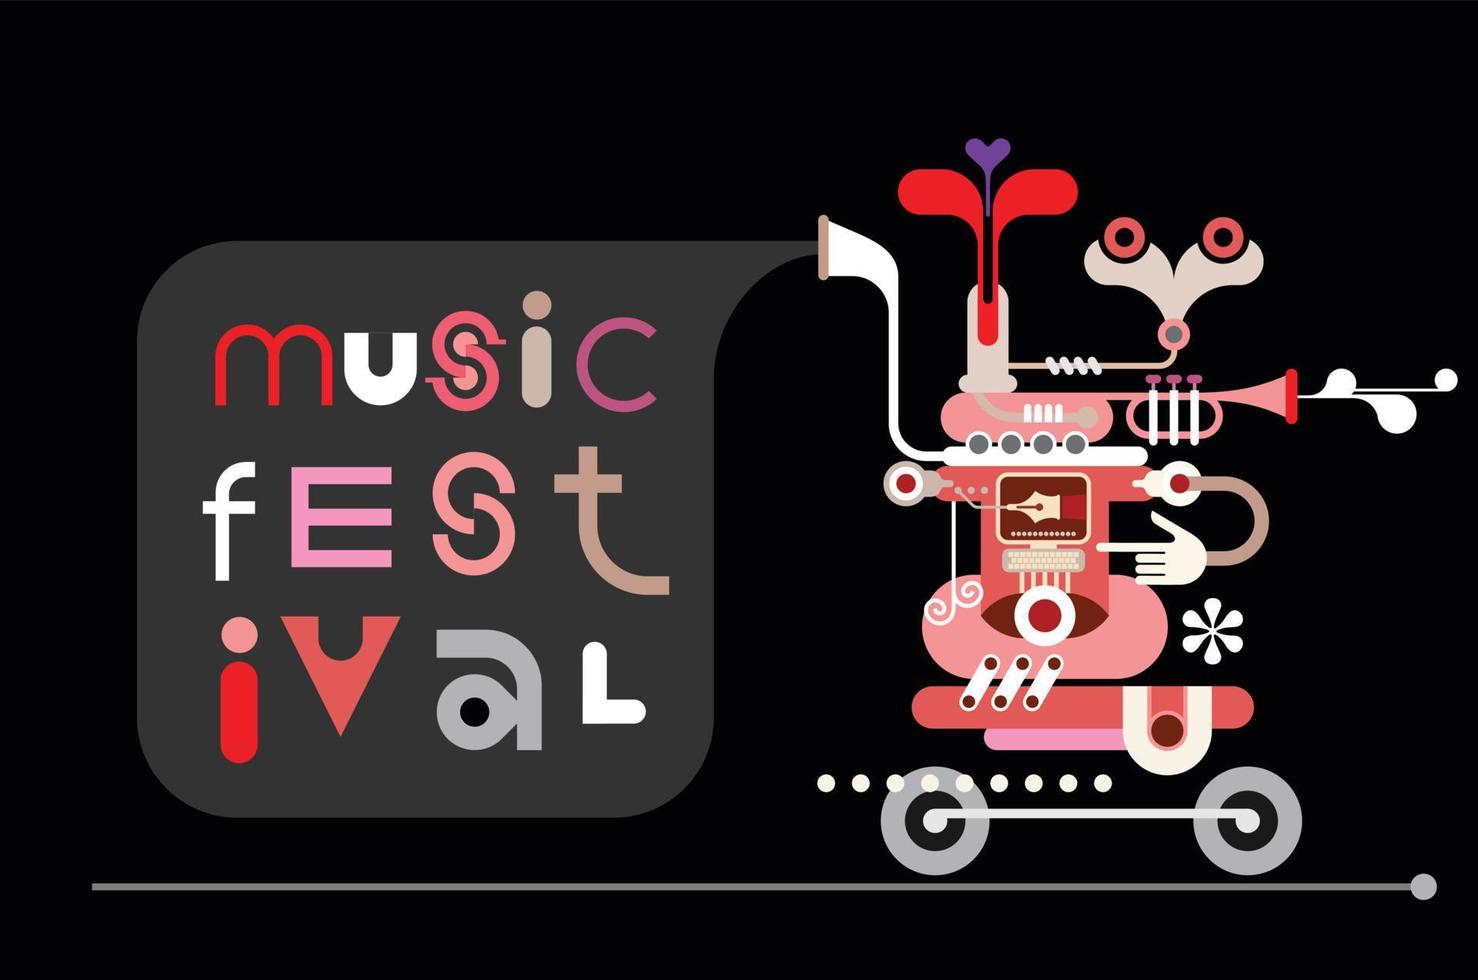 musikfestival affisch design vektor